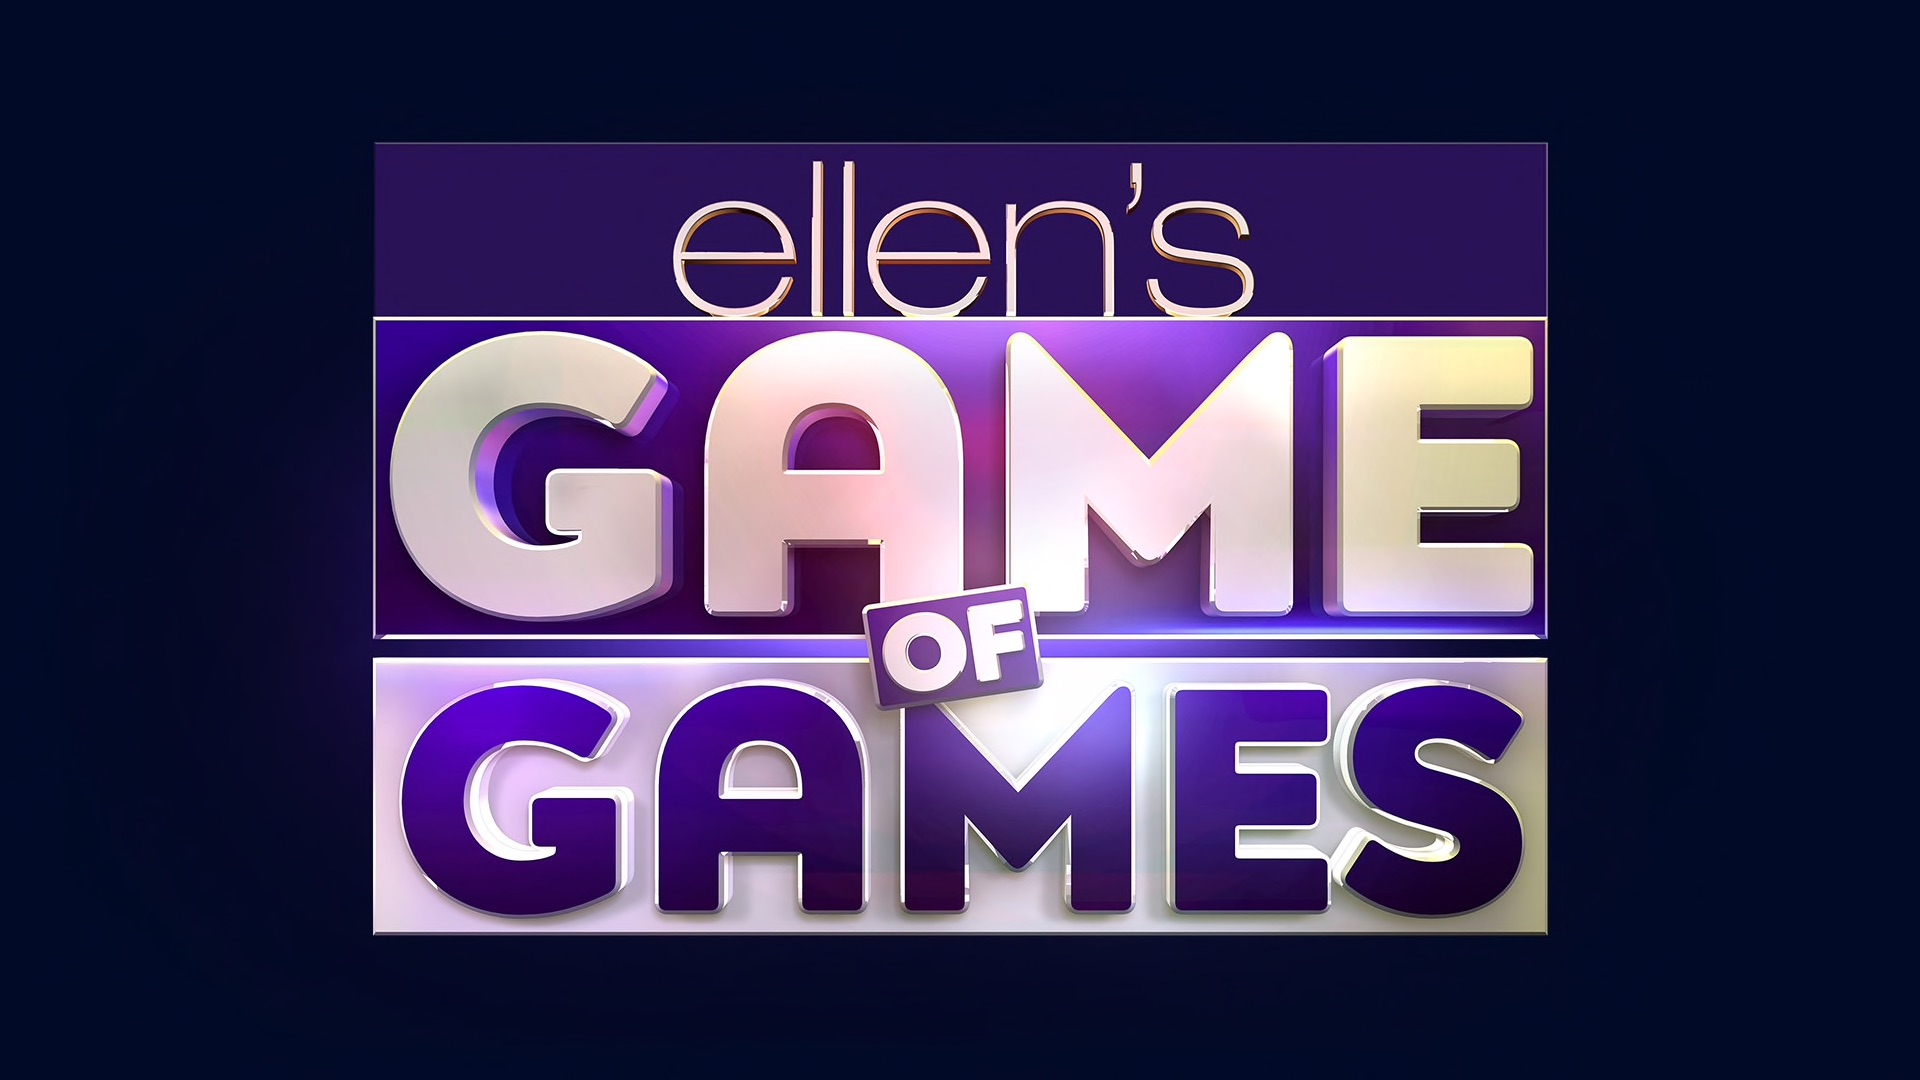 Элен игра. Своя игра лого. Elen игра. You are Ellen game.